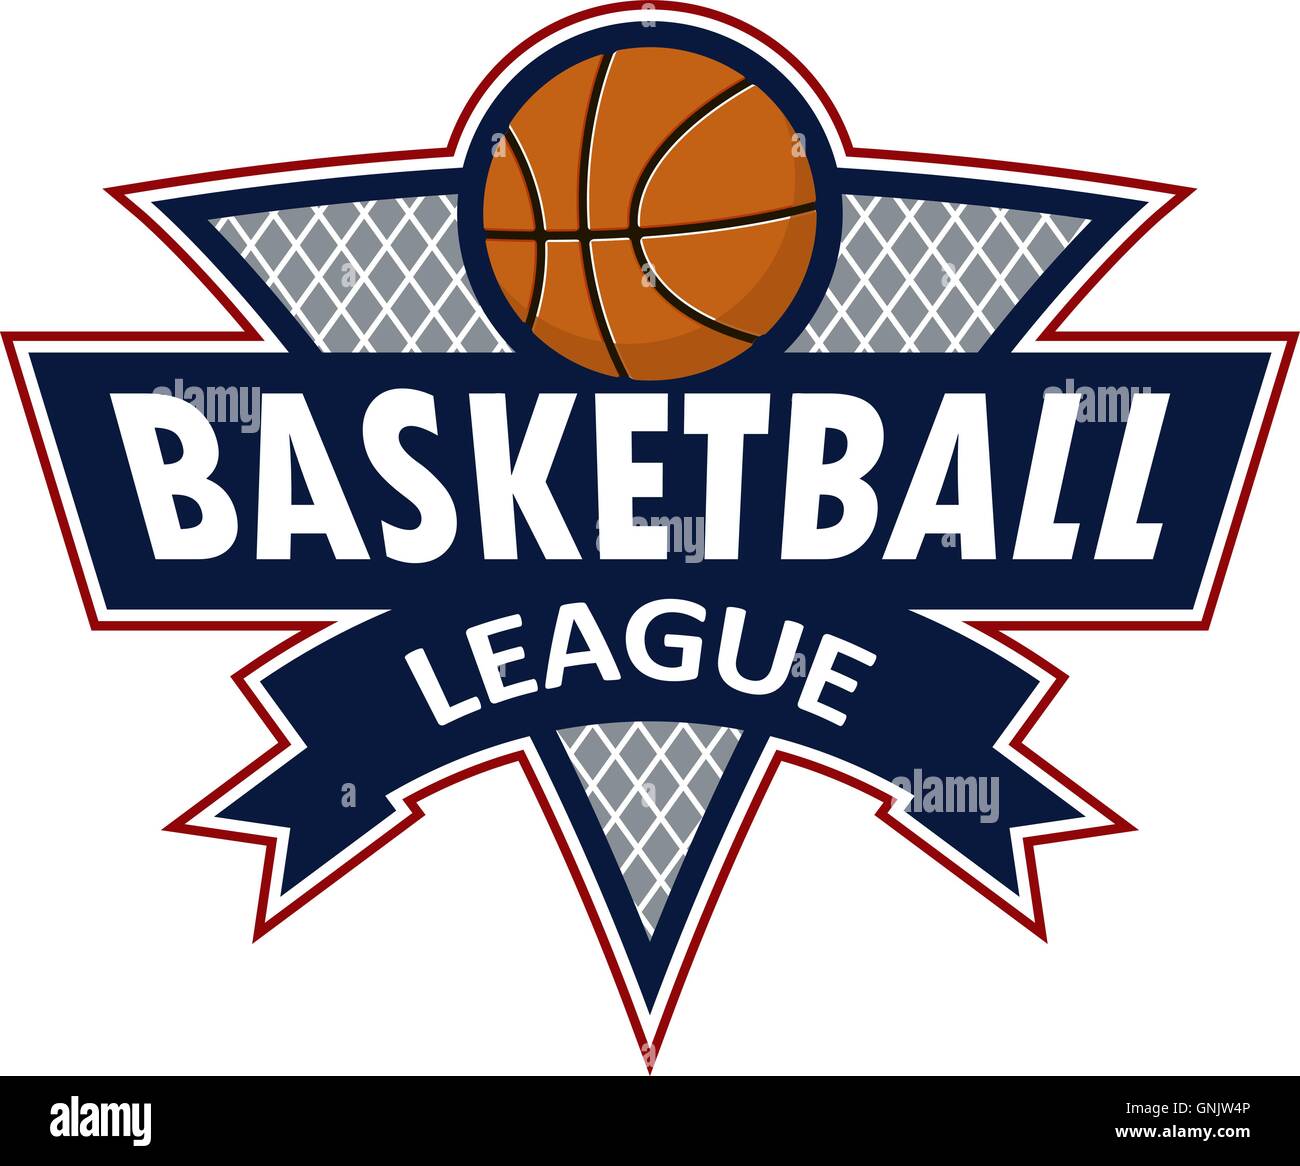 logo for a basketball team or a league Stock Vector